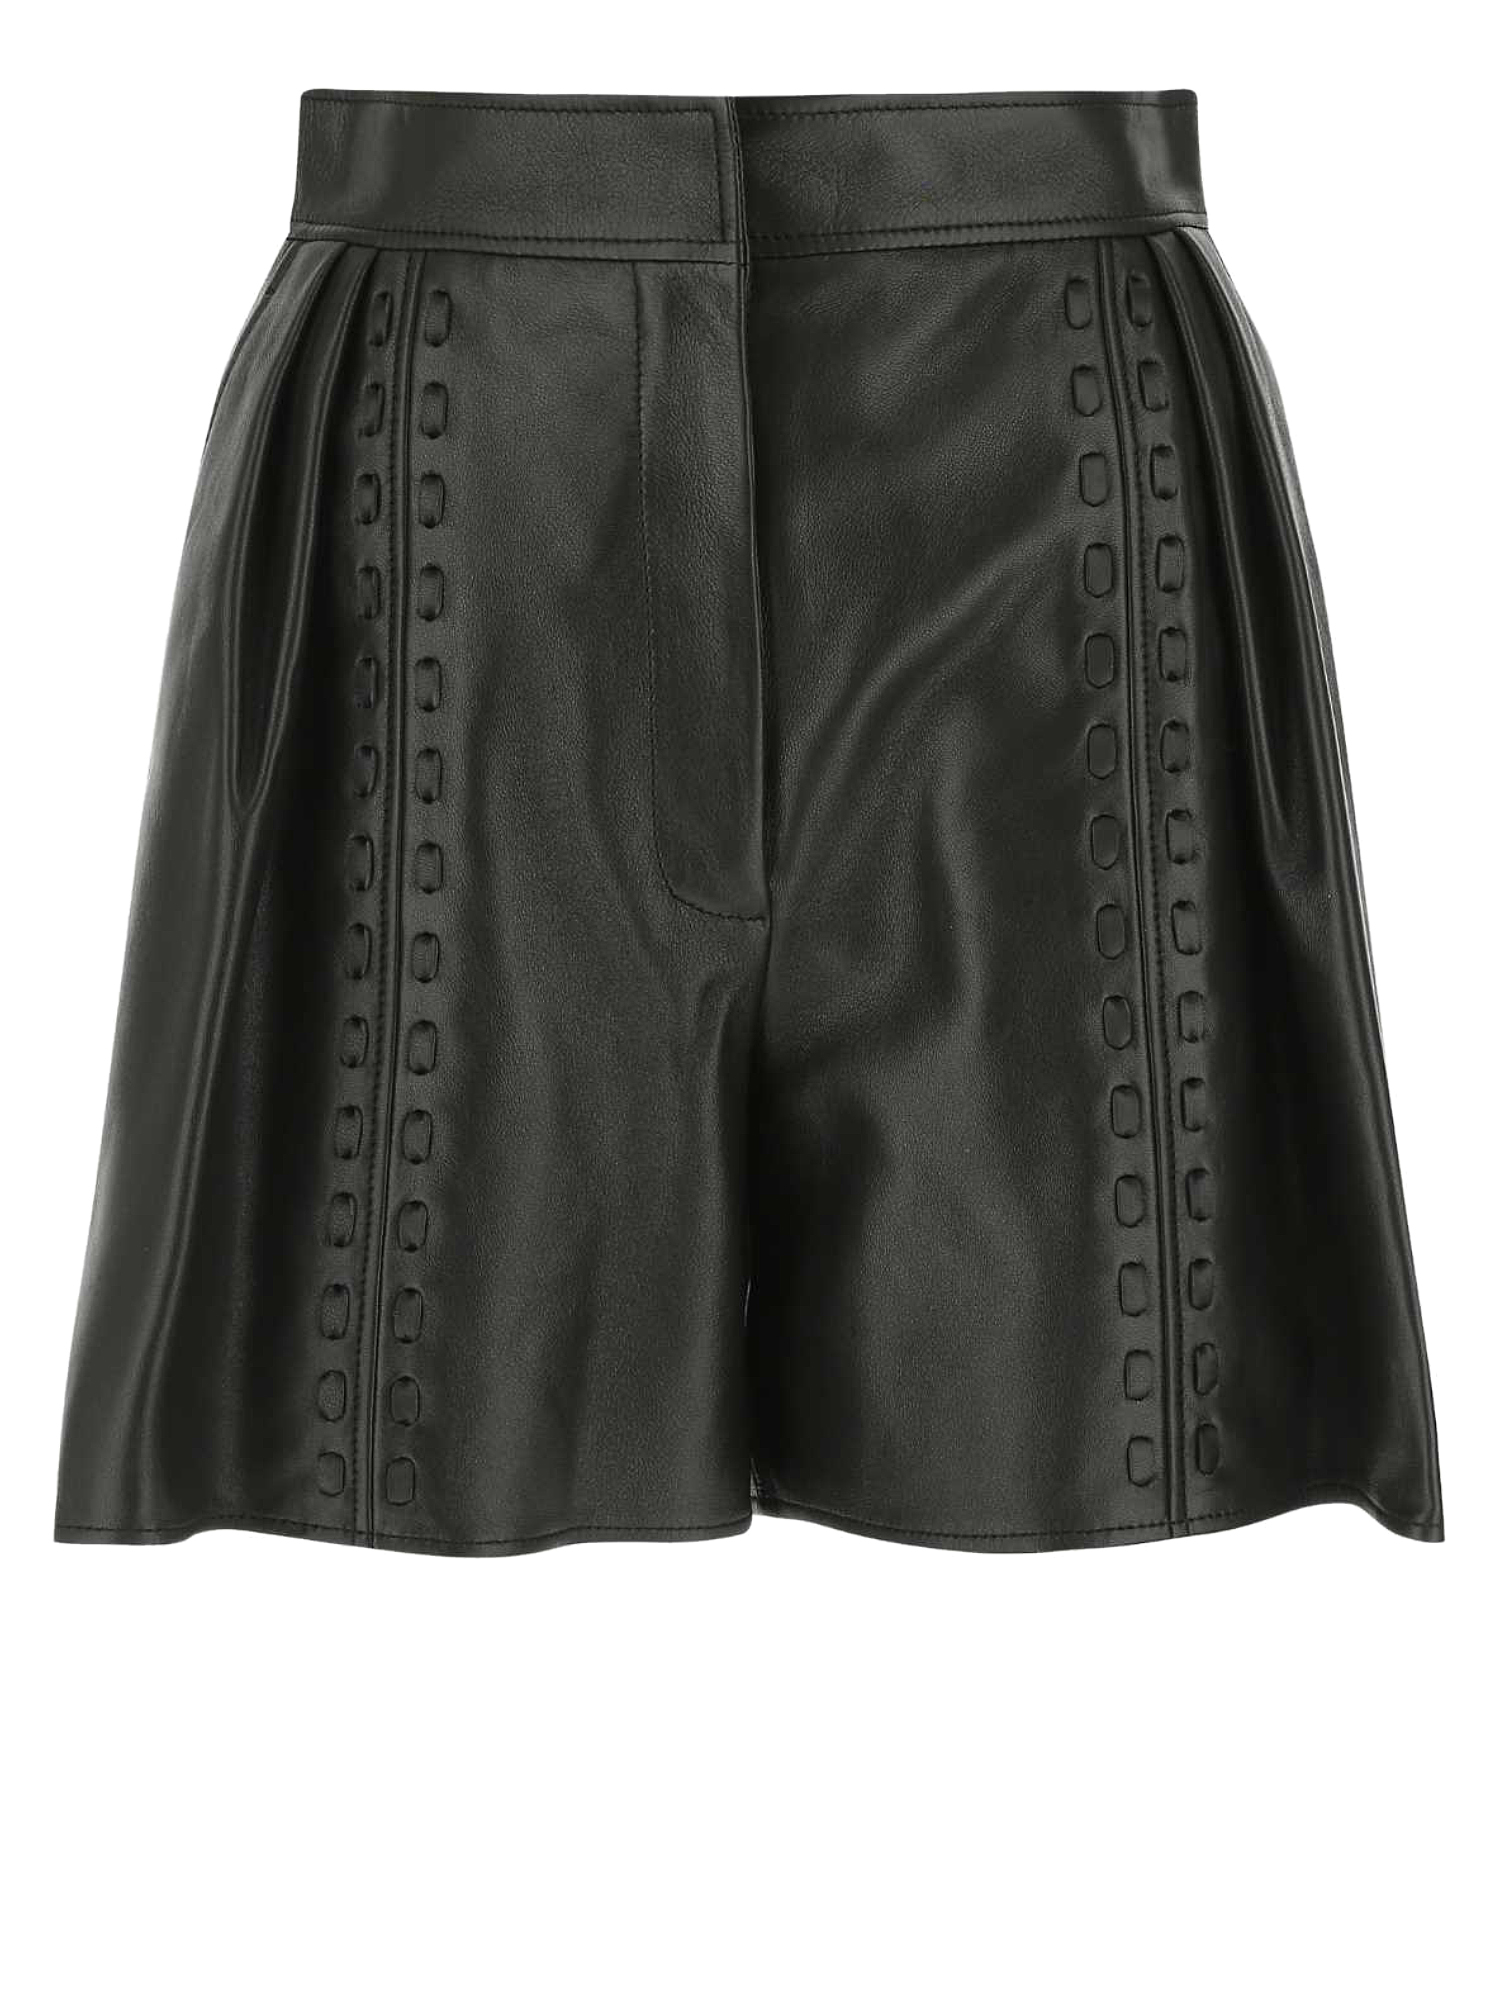 Pantalons Pour Femme - Alexander Mcqueen - En Leather Black - Taille:  -